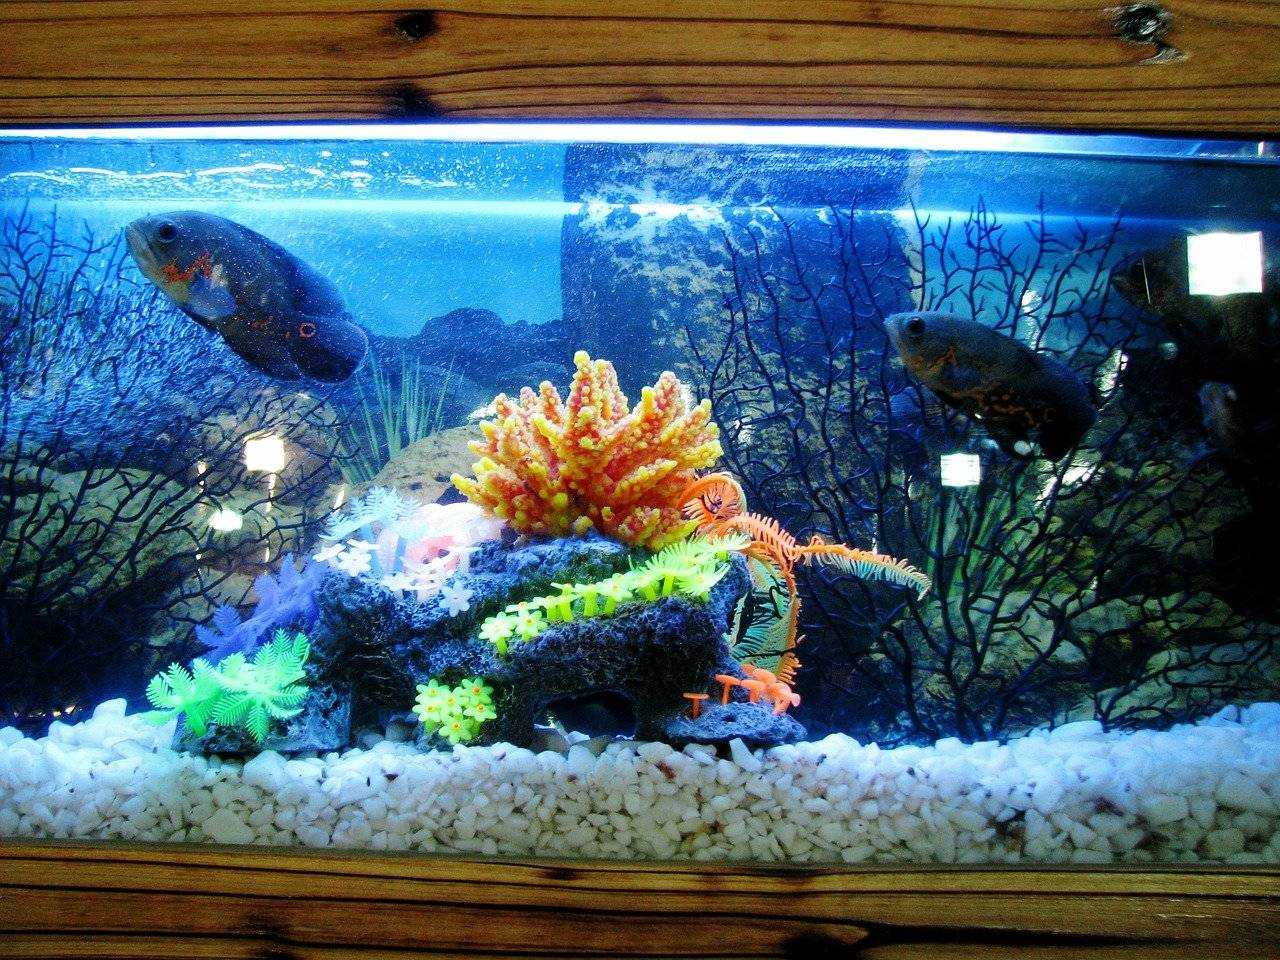 Самые неприхотливые аквариумные рыбки и растения, подходящие для маленьких аквариумов и начинающих аквариумистов